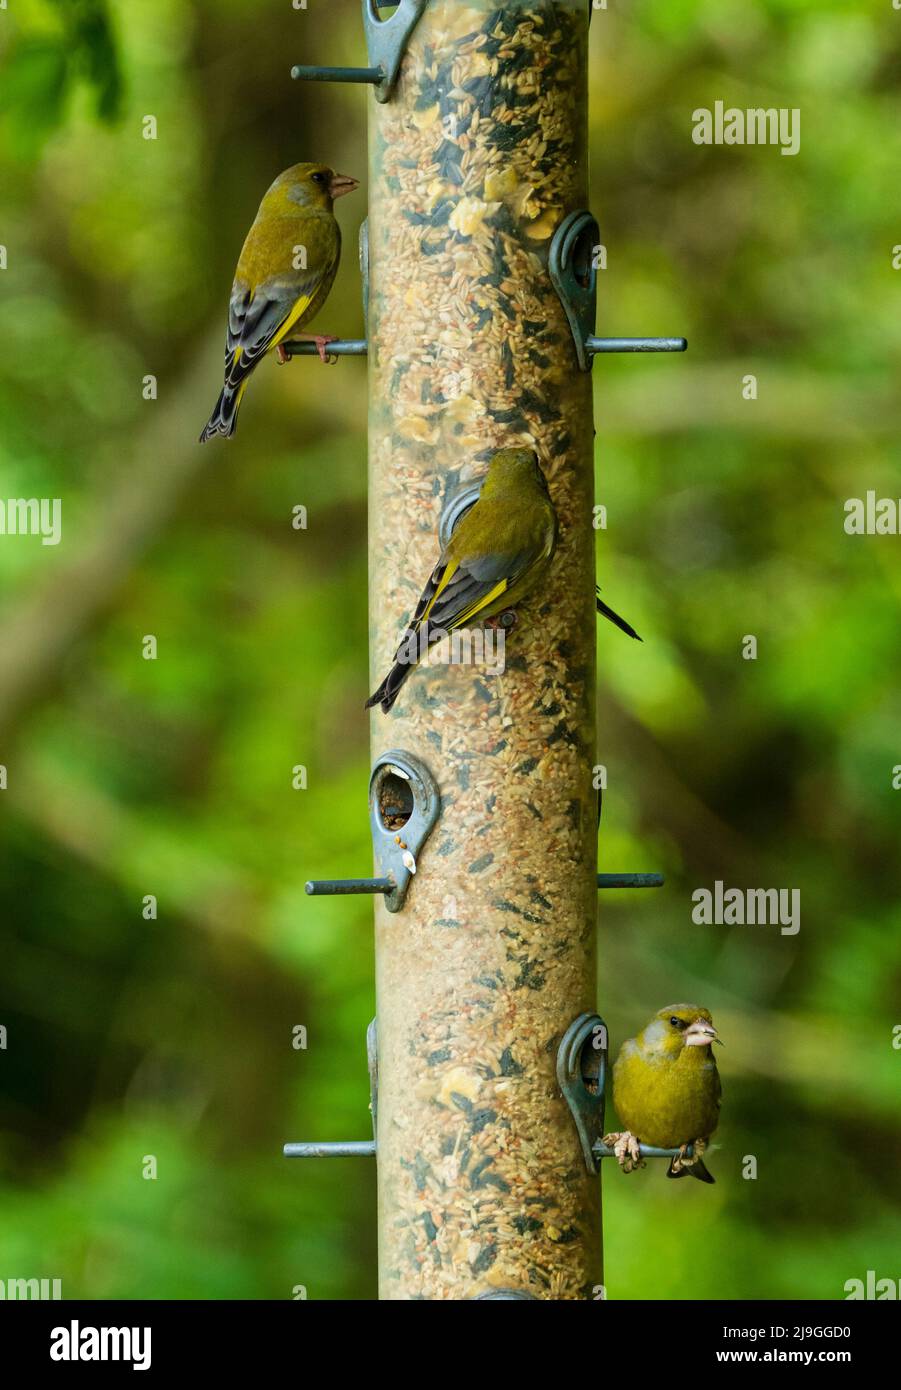 Trio de verdfinches adultes, chloris chloris, jaune et vert, originaires du Royaume-Uni, se nourrissant d'un mélange de graines et de graines de tournesol Banque D'Images